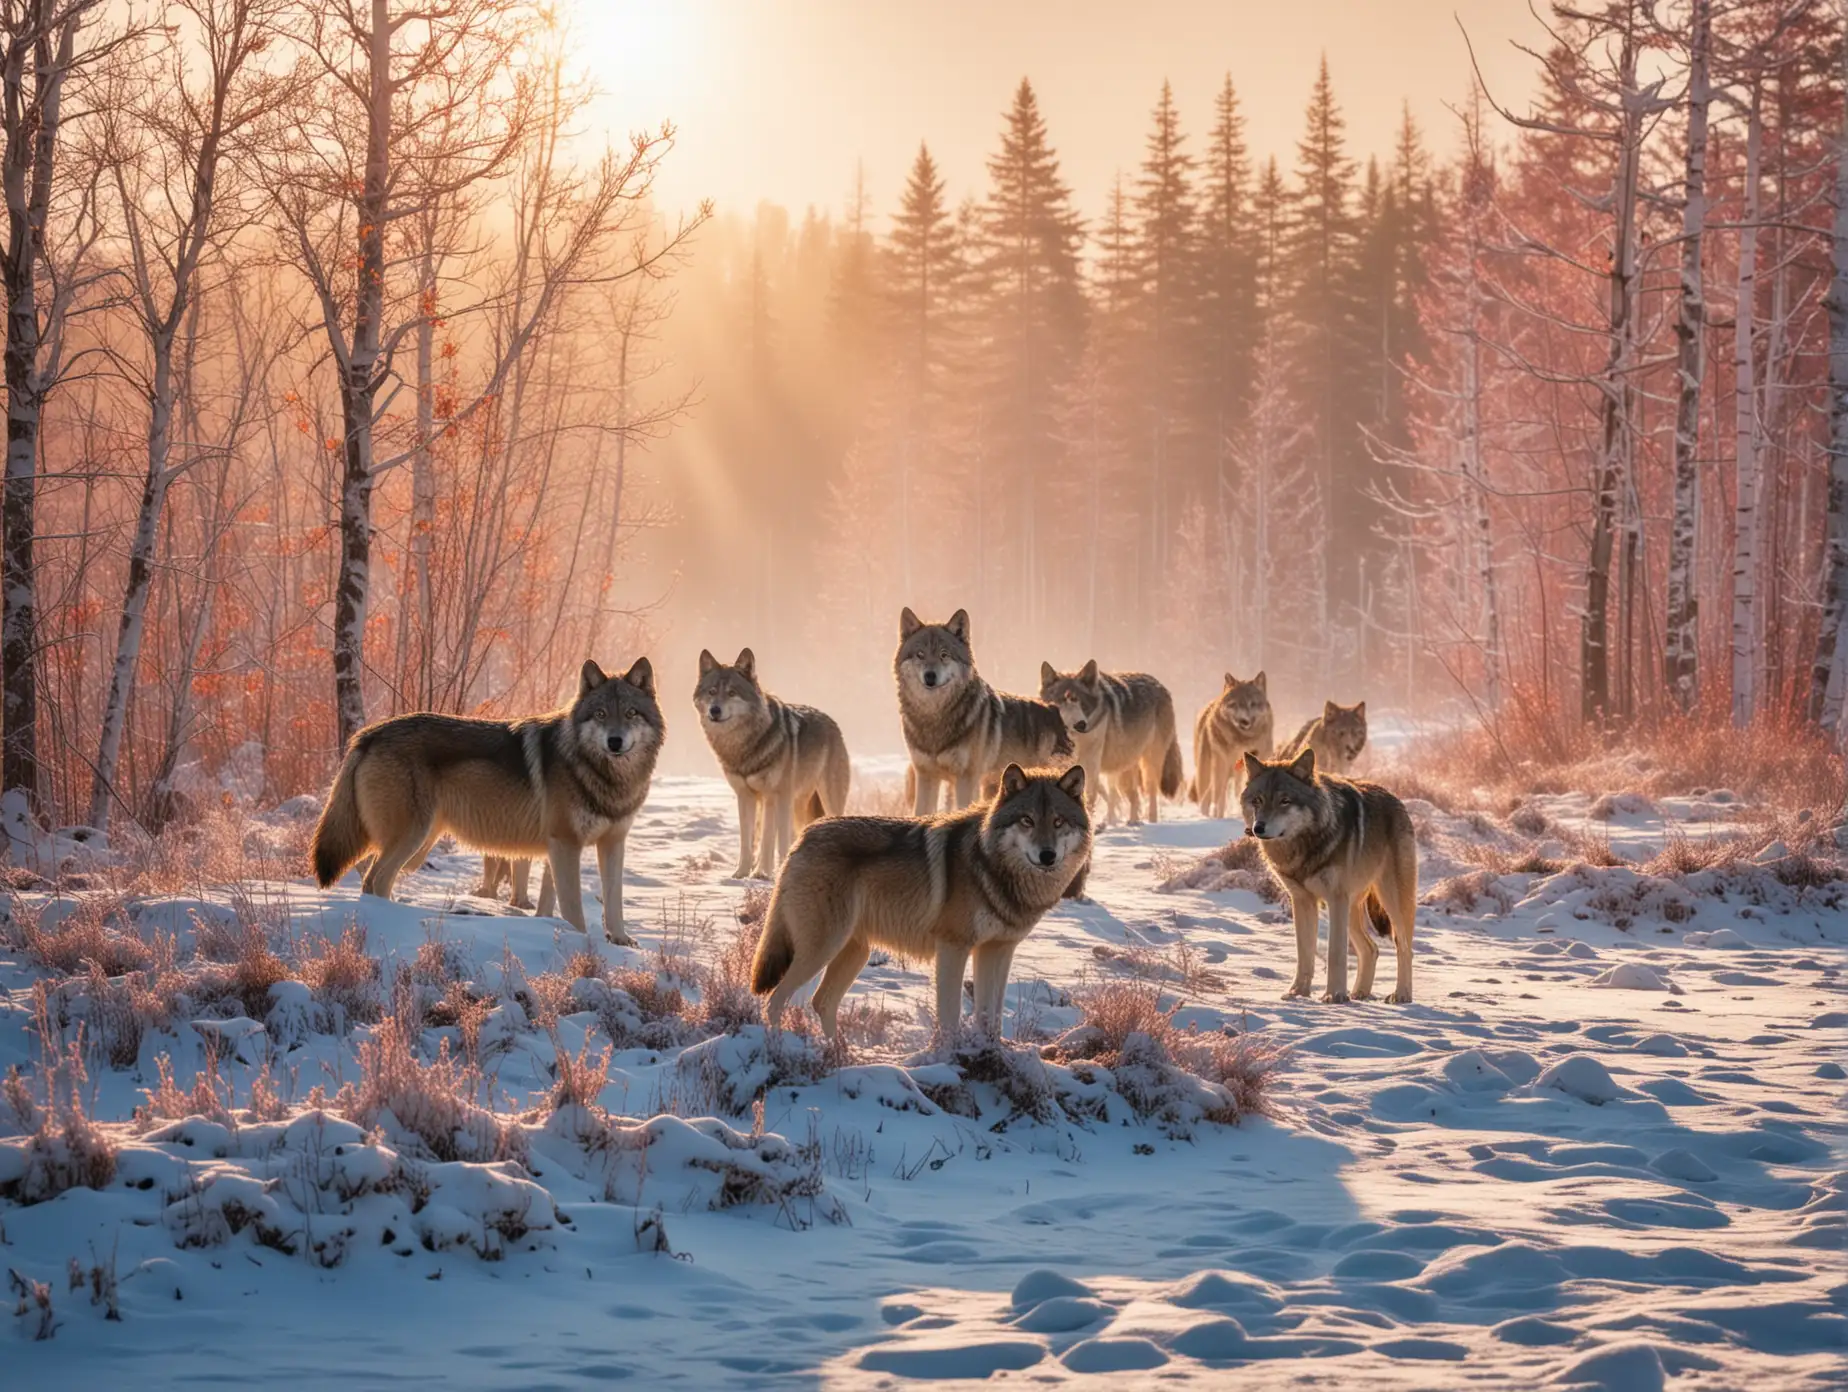 wolfsrudel von 5 wölfen in winterlicher, monumentaler landschaft, sibirien, farbenfroh, zauberhaft, sonnig